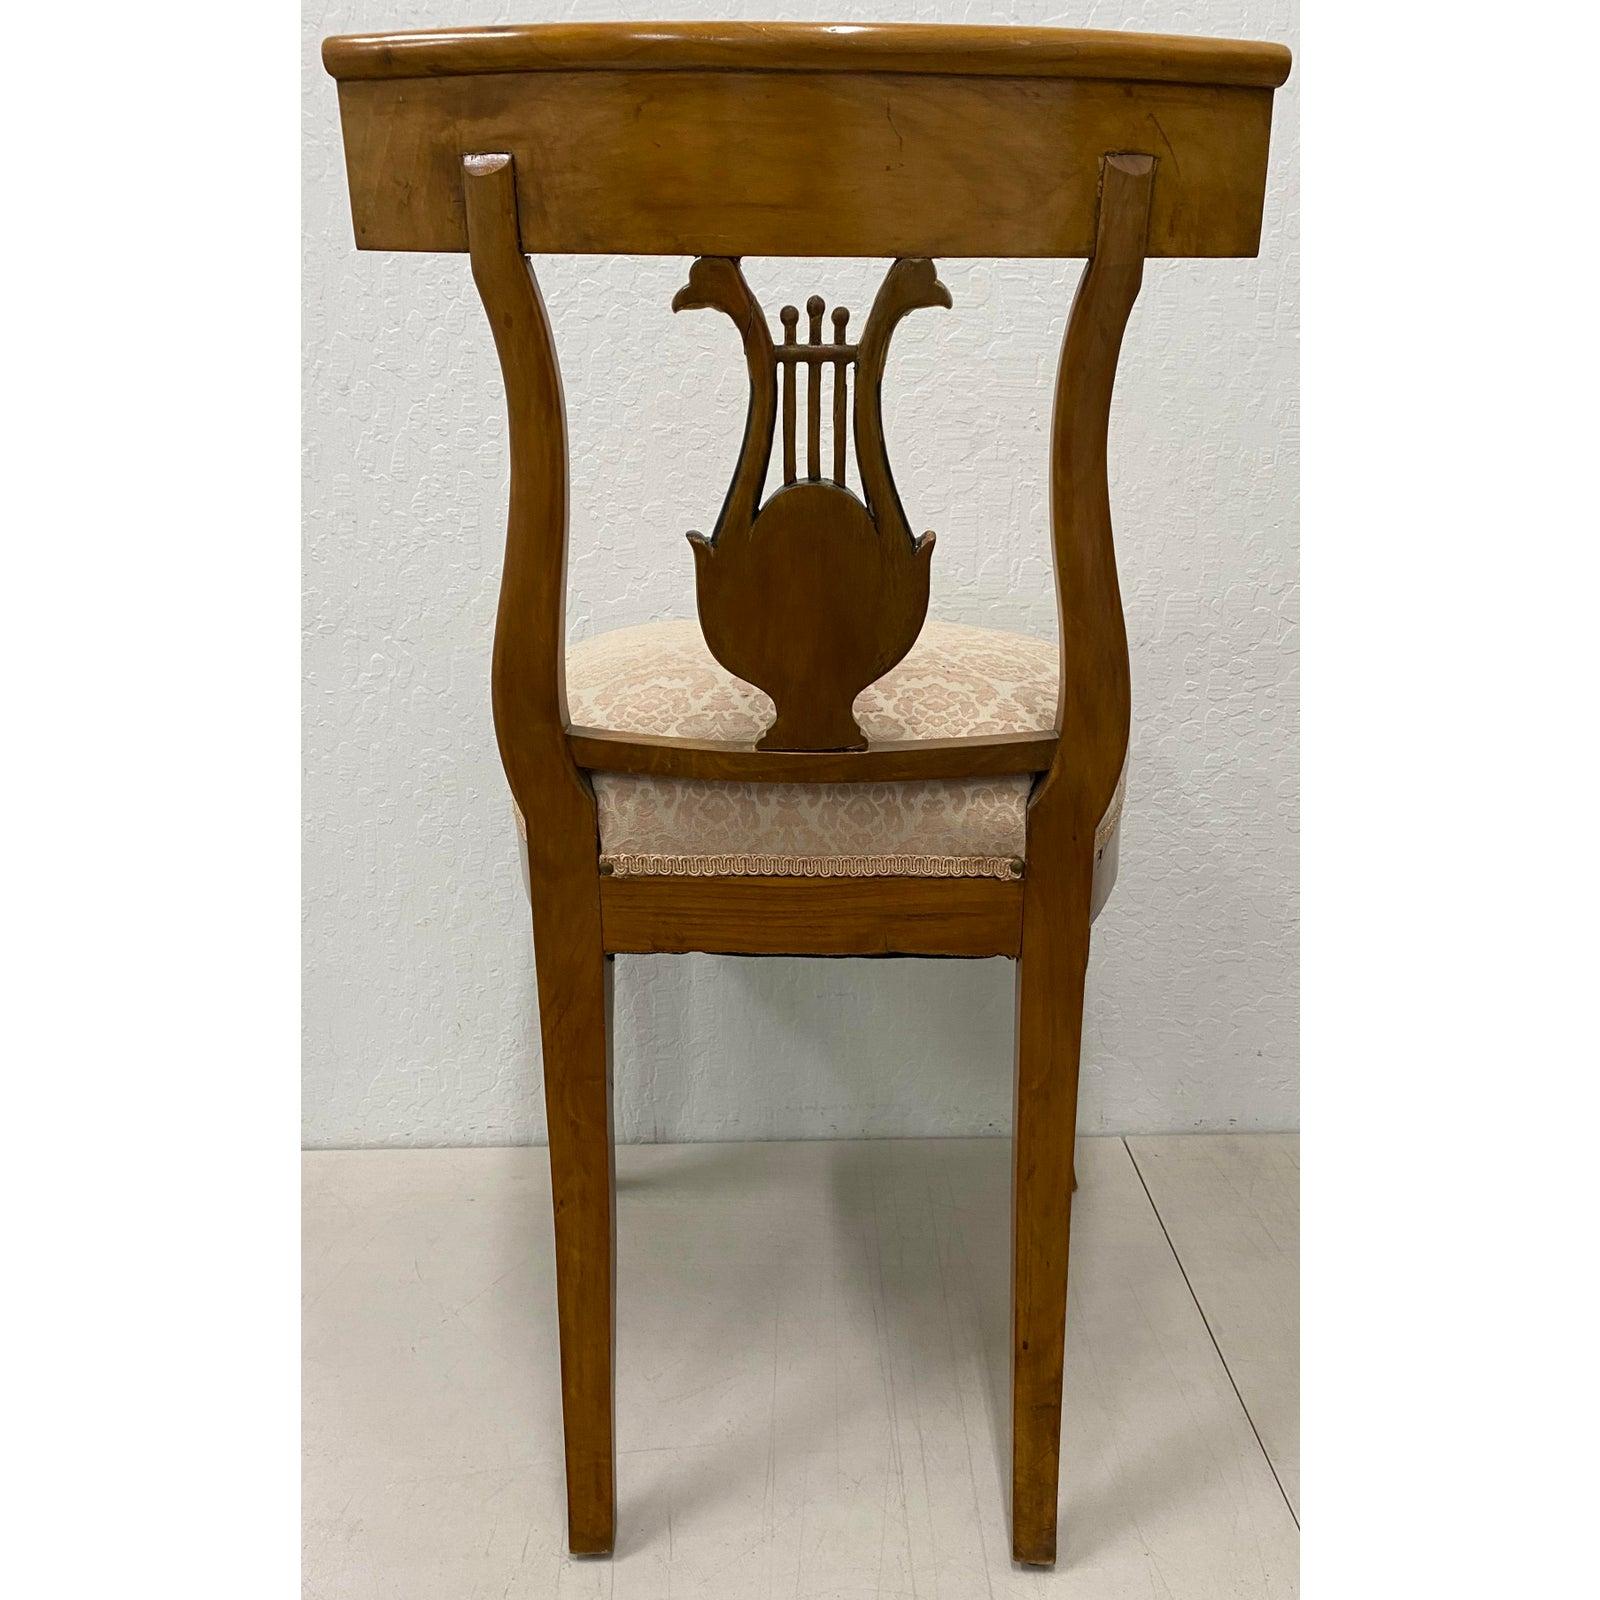 Paire de chaises de salle à manger Empire à dossier lyre du 19e siècle

Merveilleuse paire de chaises de salle à manger en noyer avec double tête d'aigle et lyre sculptées.

Mesures : 20